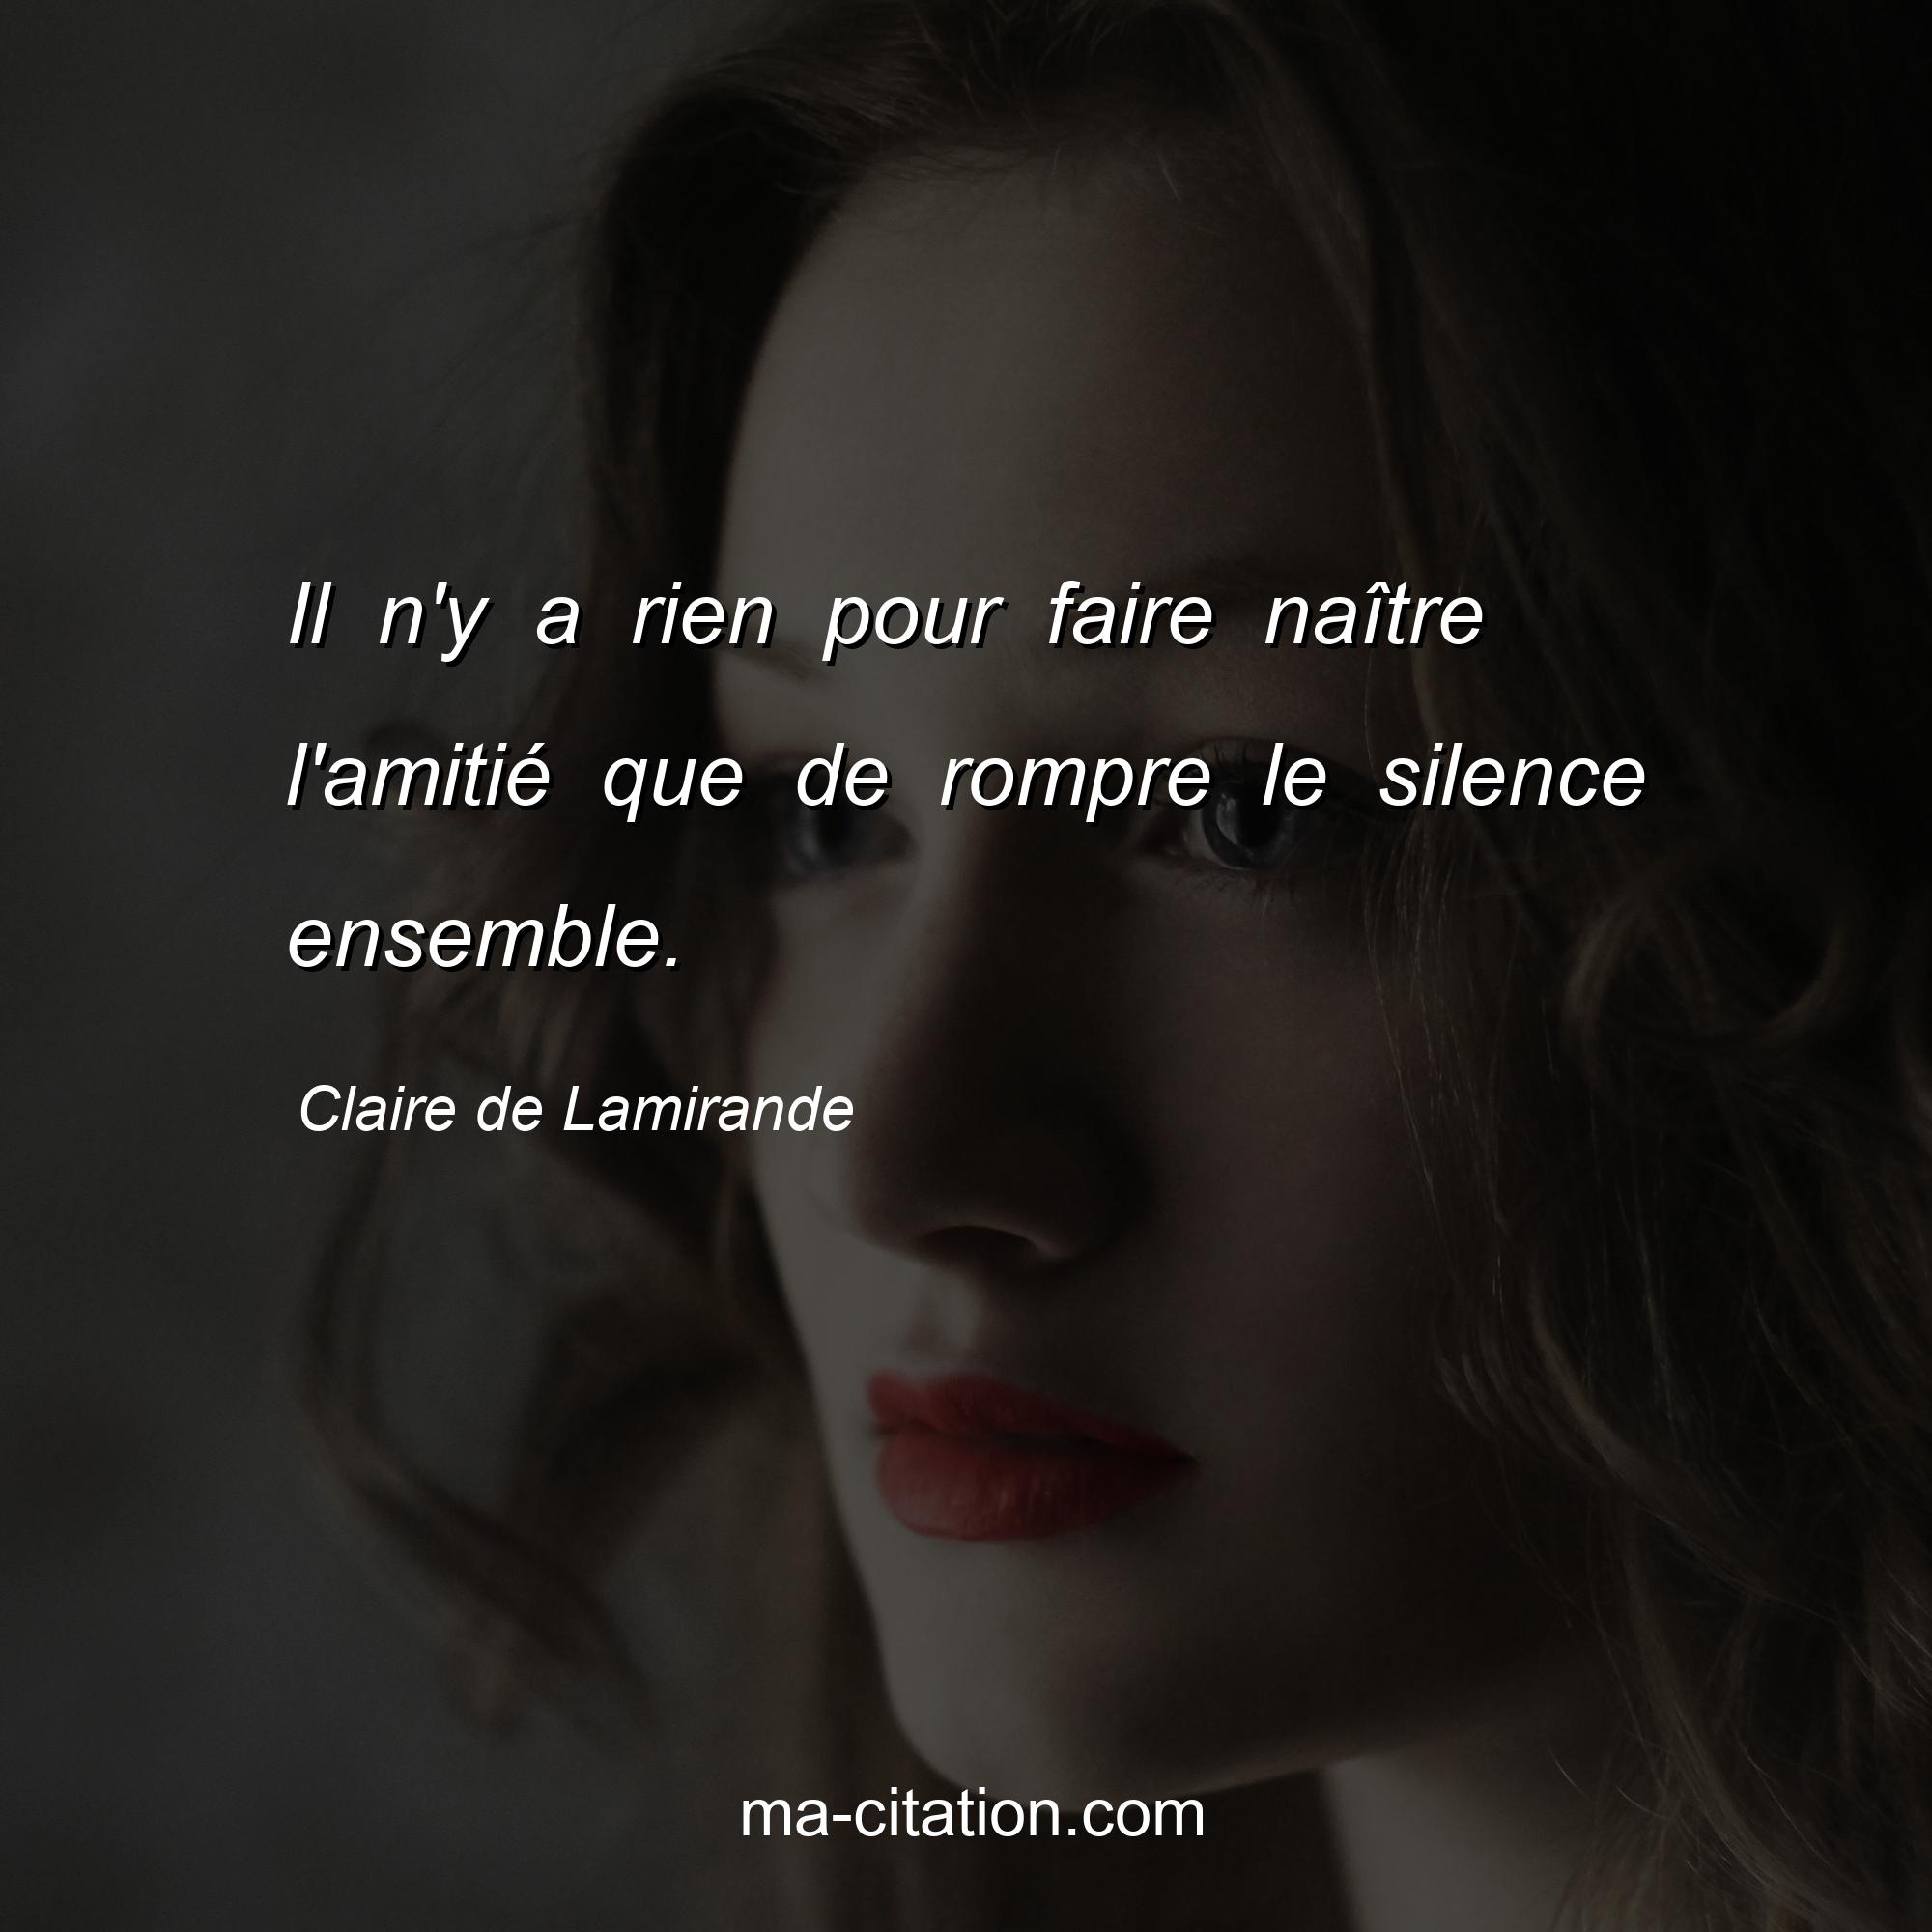 Claire de Lamirande : Il n'y a rien pour faire naître l'amitié que de rompre le silence ensemble.